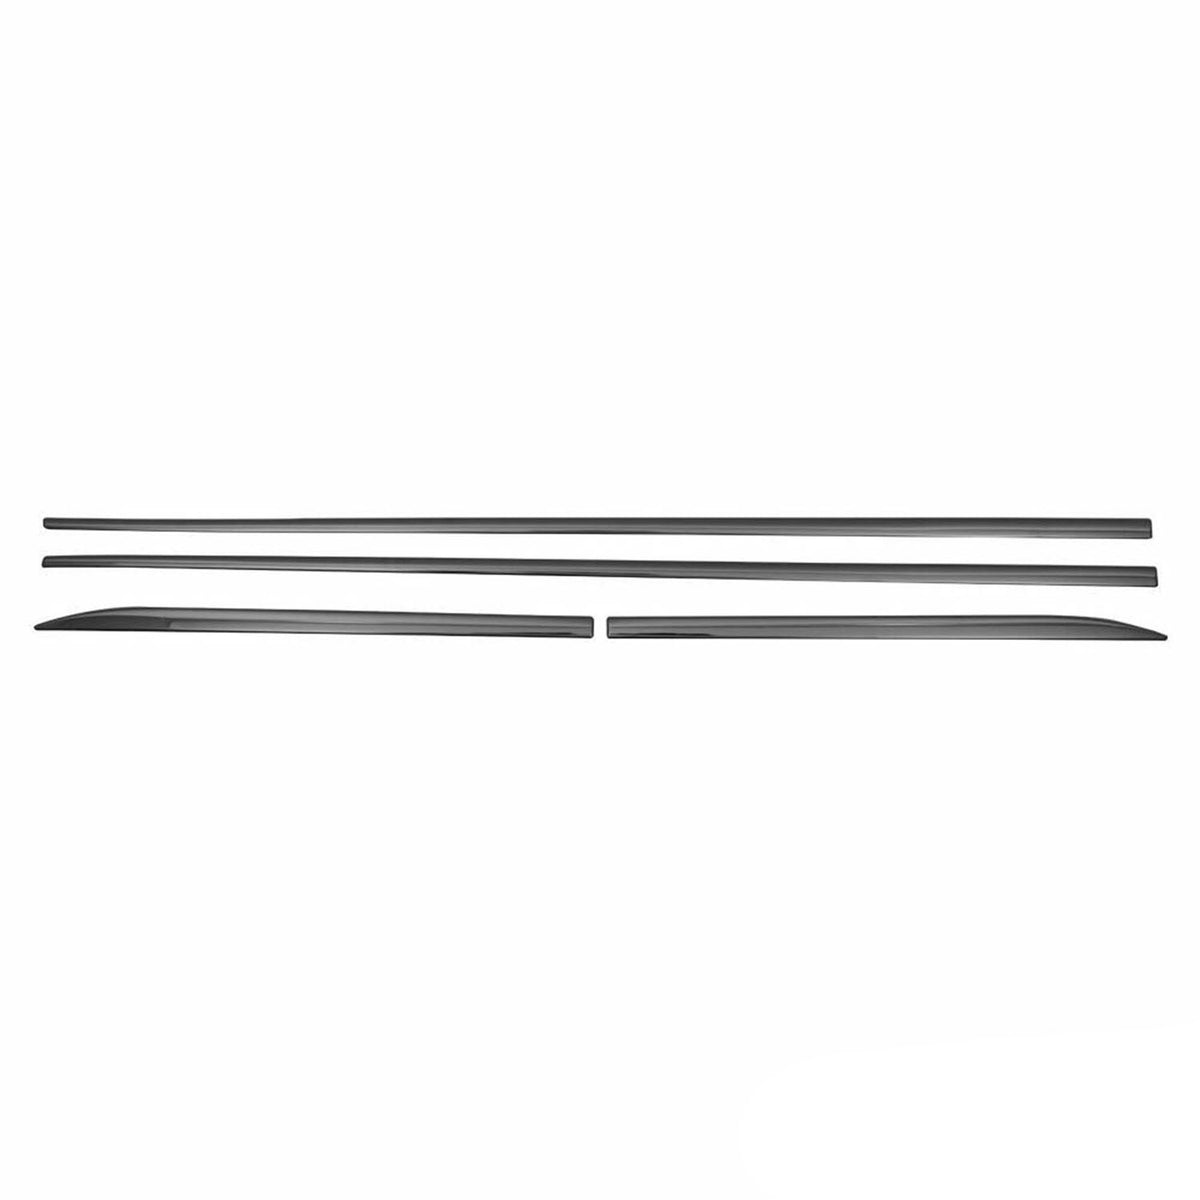 Seitentürleiste Türschutzleiste für Dodge Neon 2016-2024 Chrom Stahl Dunkel 4x